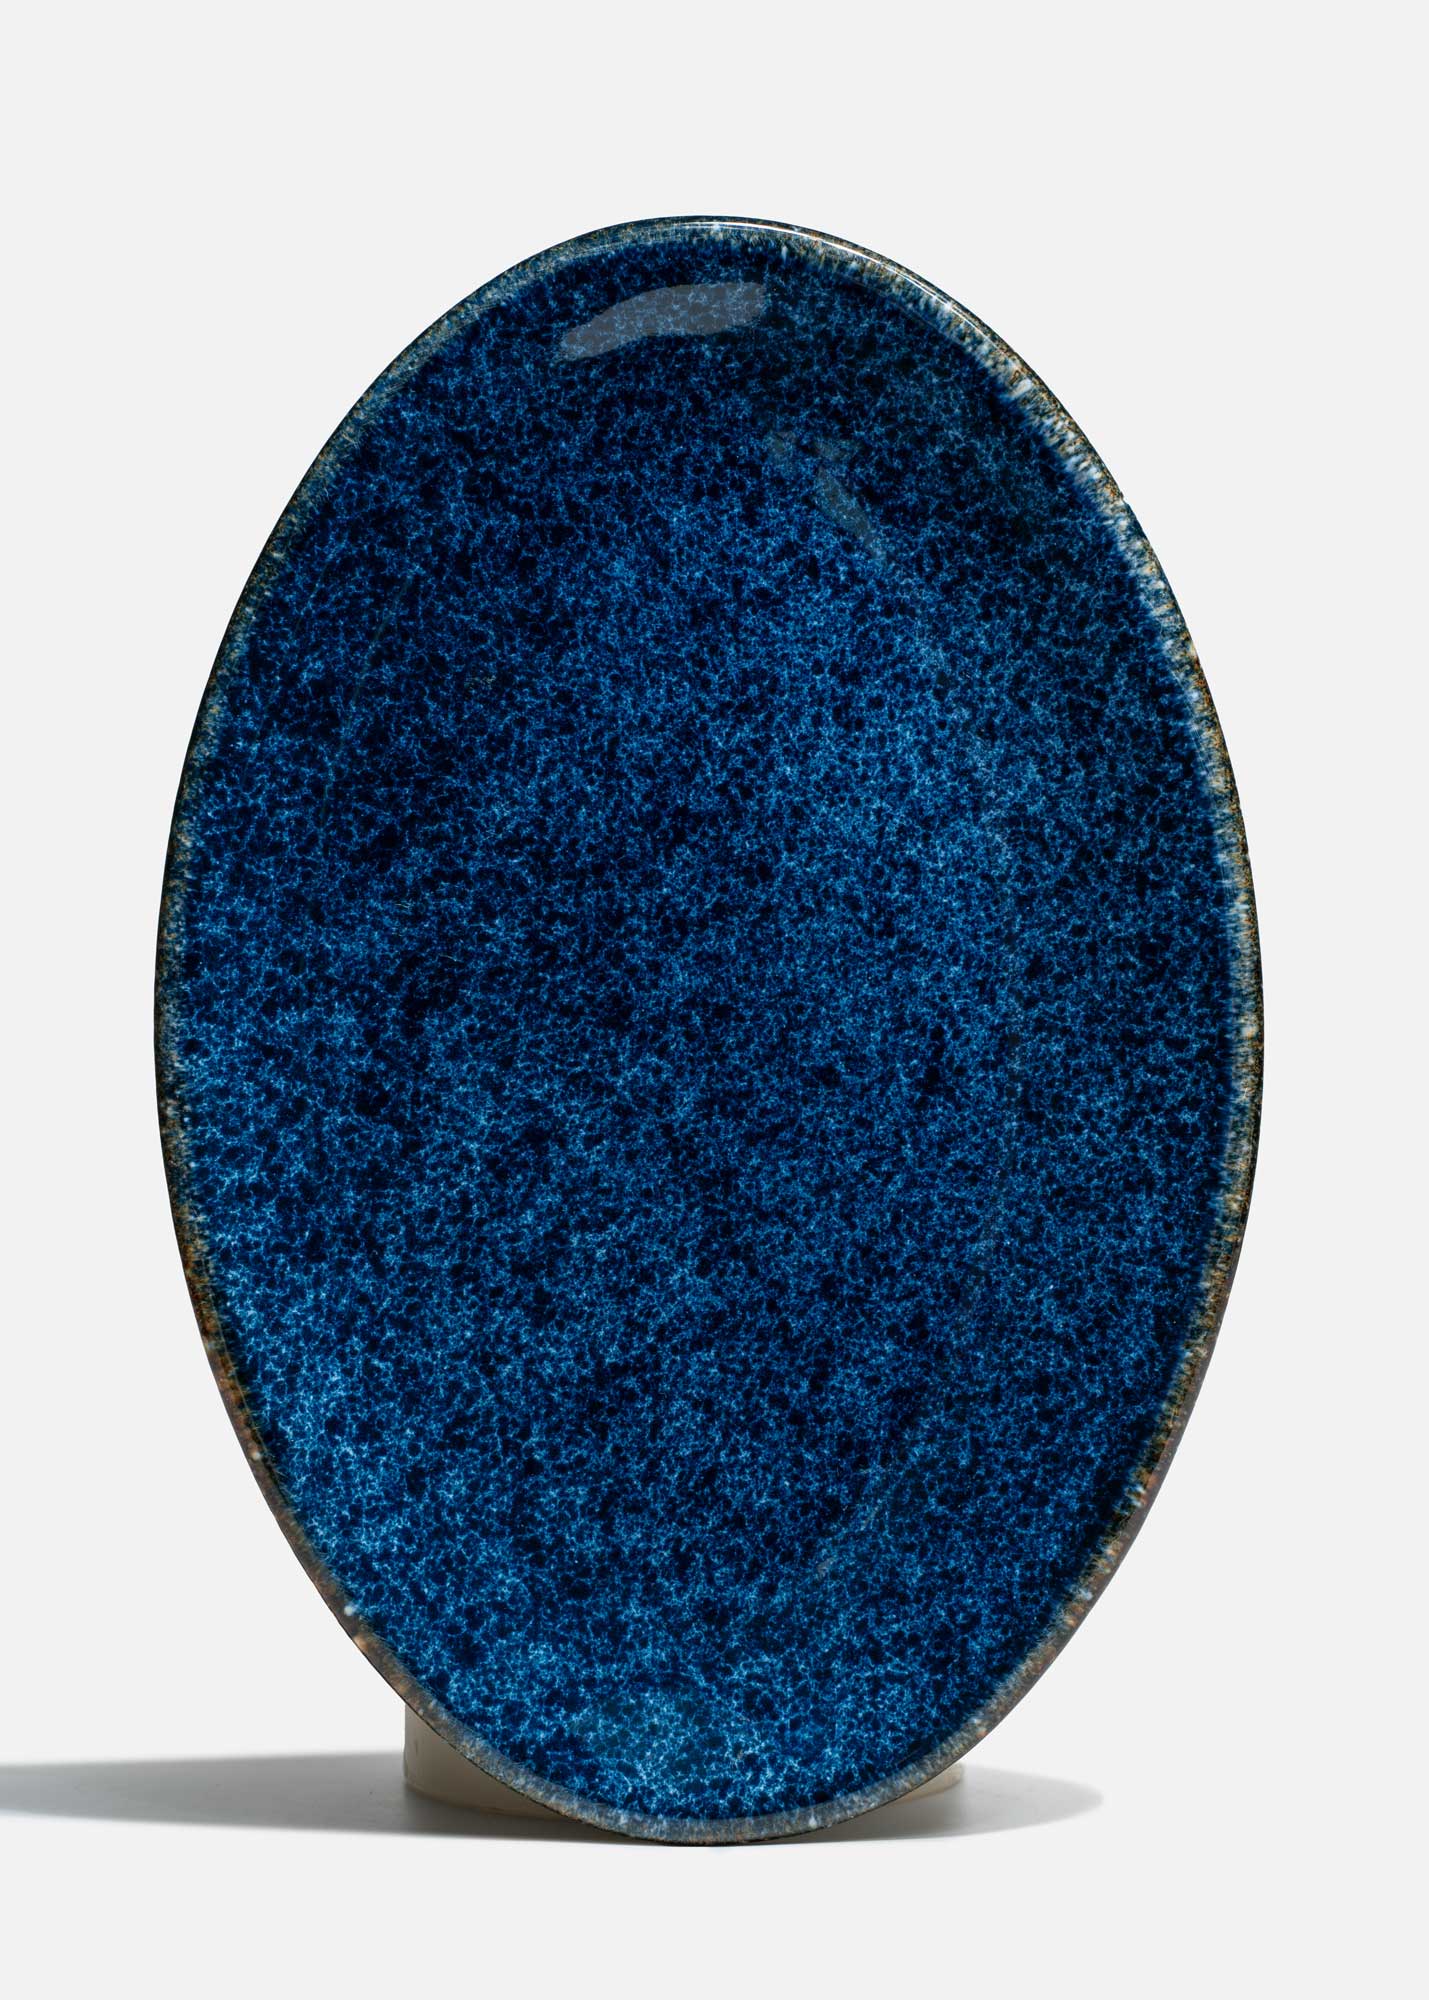 plato ovalado porcelana azul mahahome